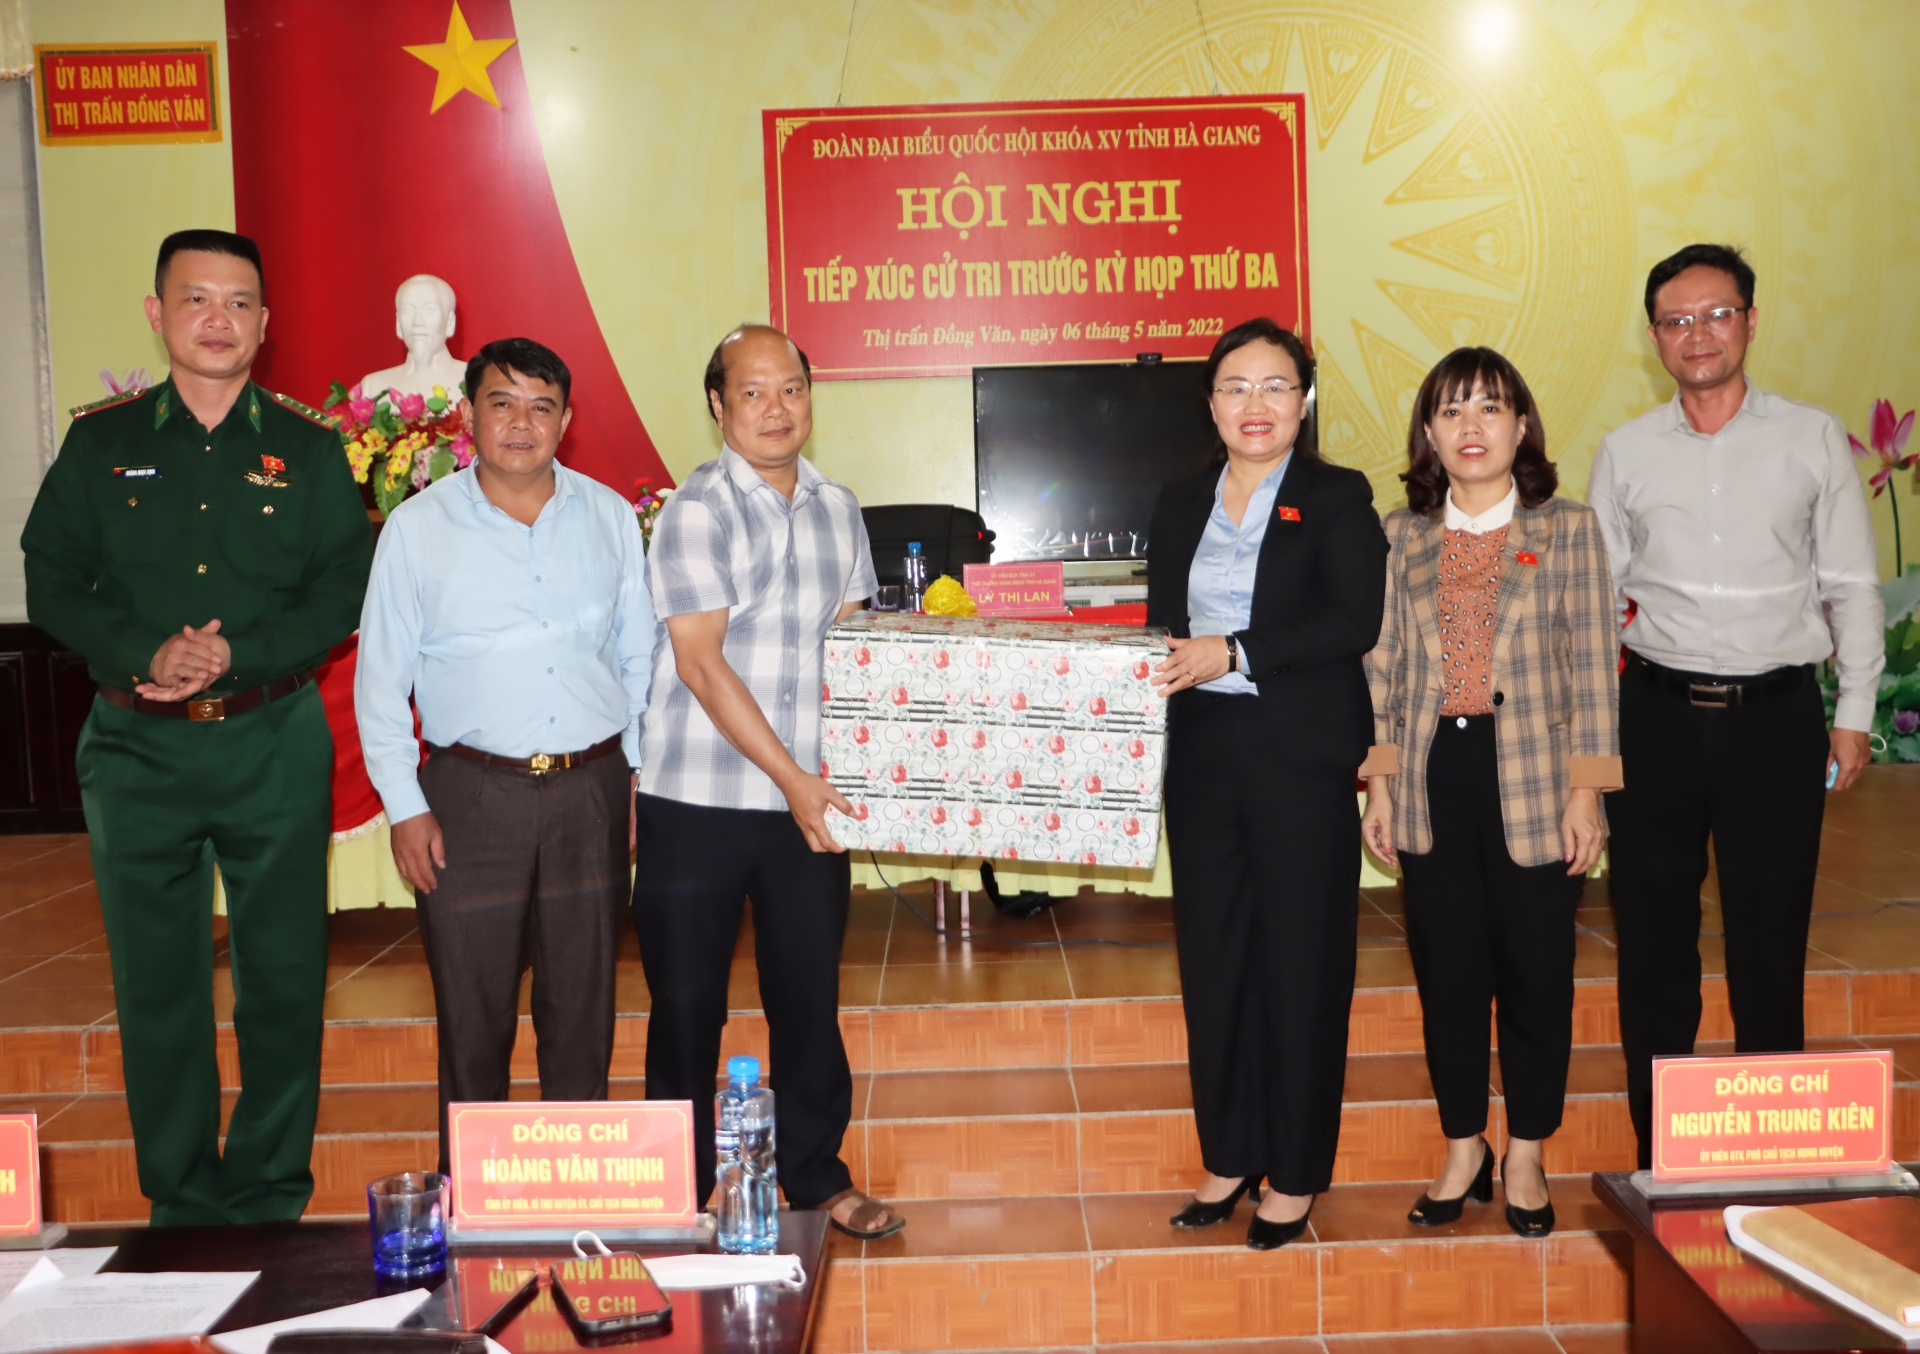 Đoàn đại biểu quốc hội tỉnh Hà Giang tiếp xúc cử tri trước kỳ họp thứ 3 tại Đồng Văn